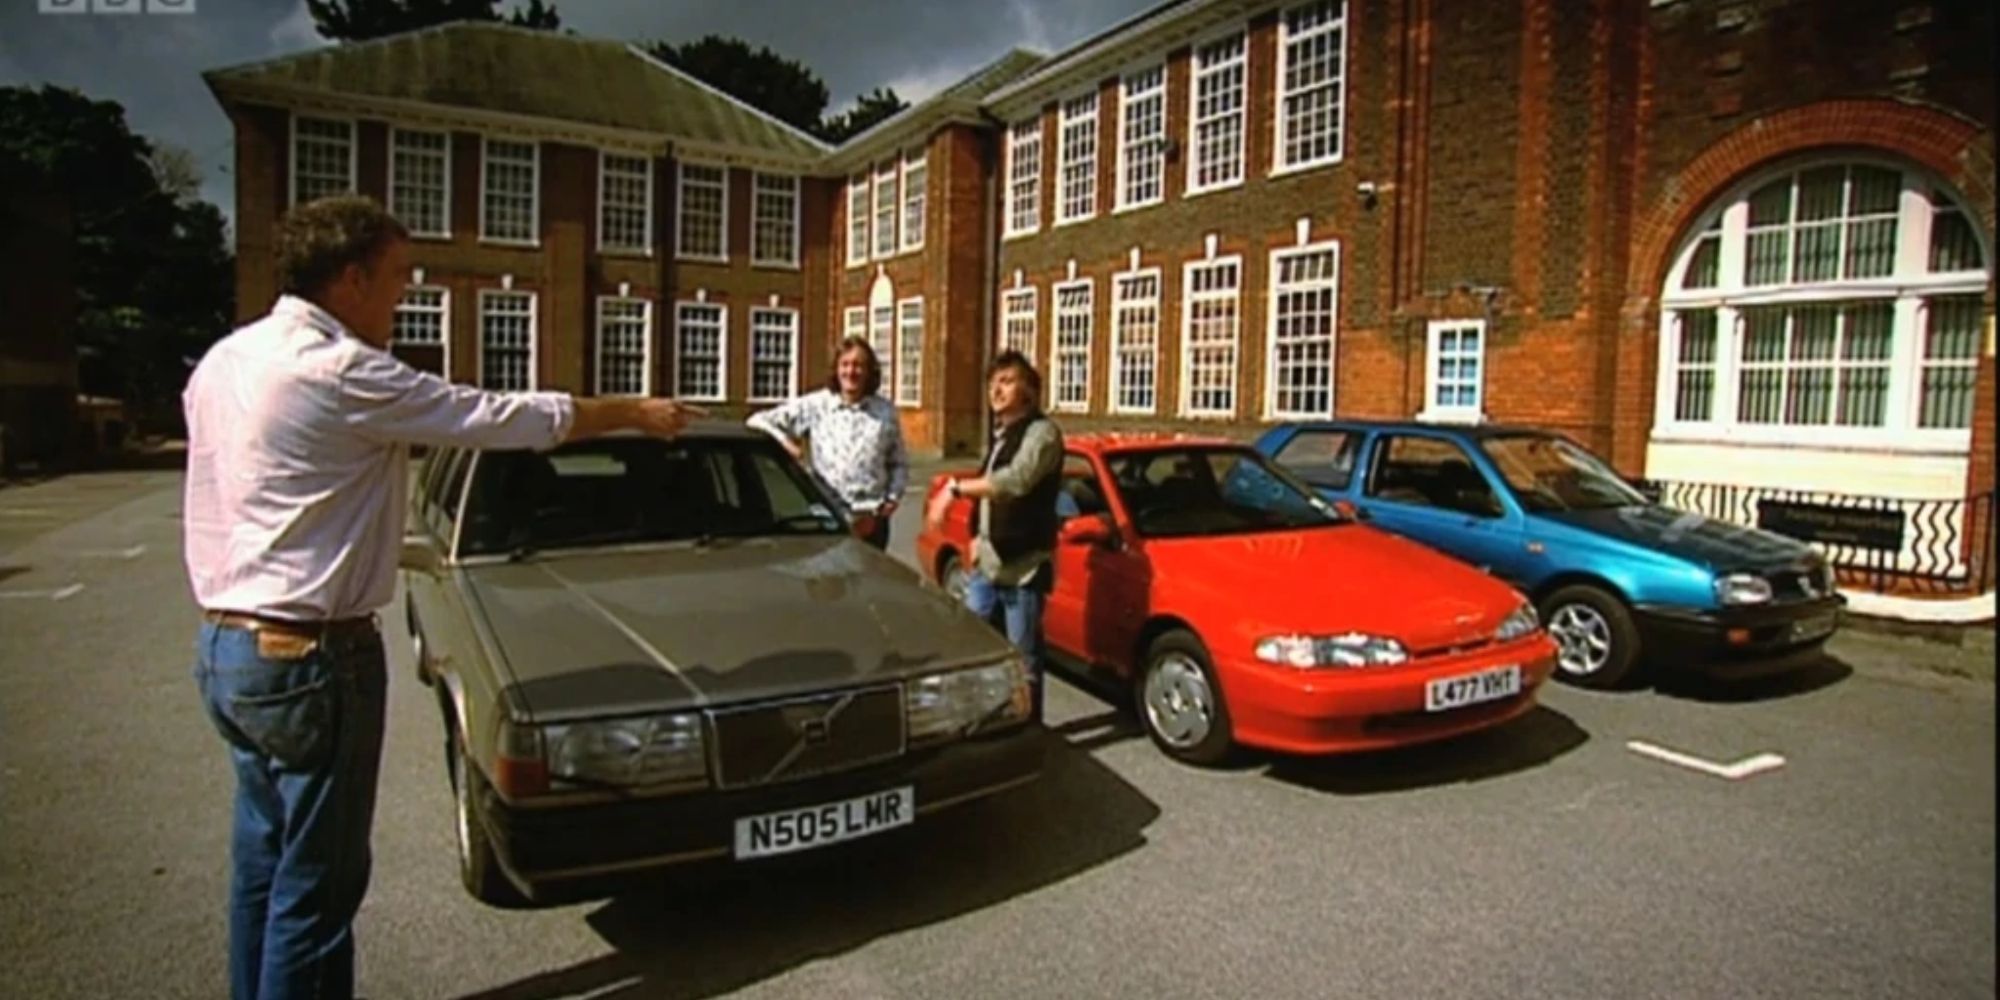 Uma cena de Top-Gear-Season-13, episódio 2 com um carro verde oliva, um carro vermelho e um carro azul em frente a um prédio de tijolos, um membro do elenco apontando